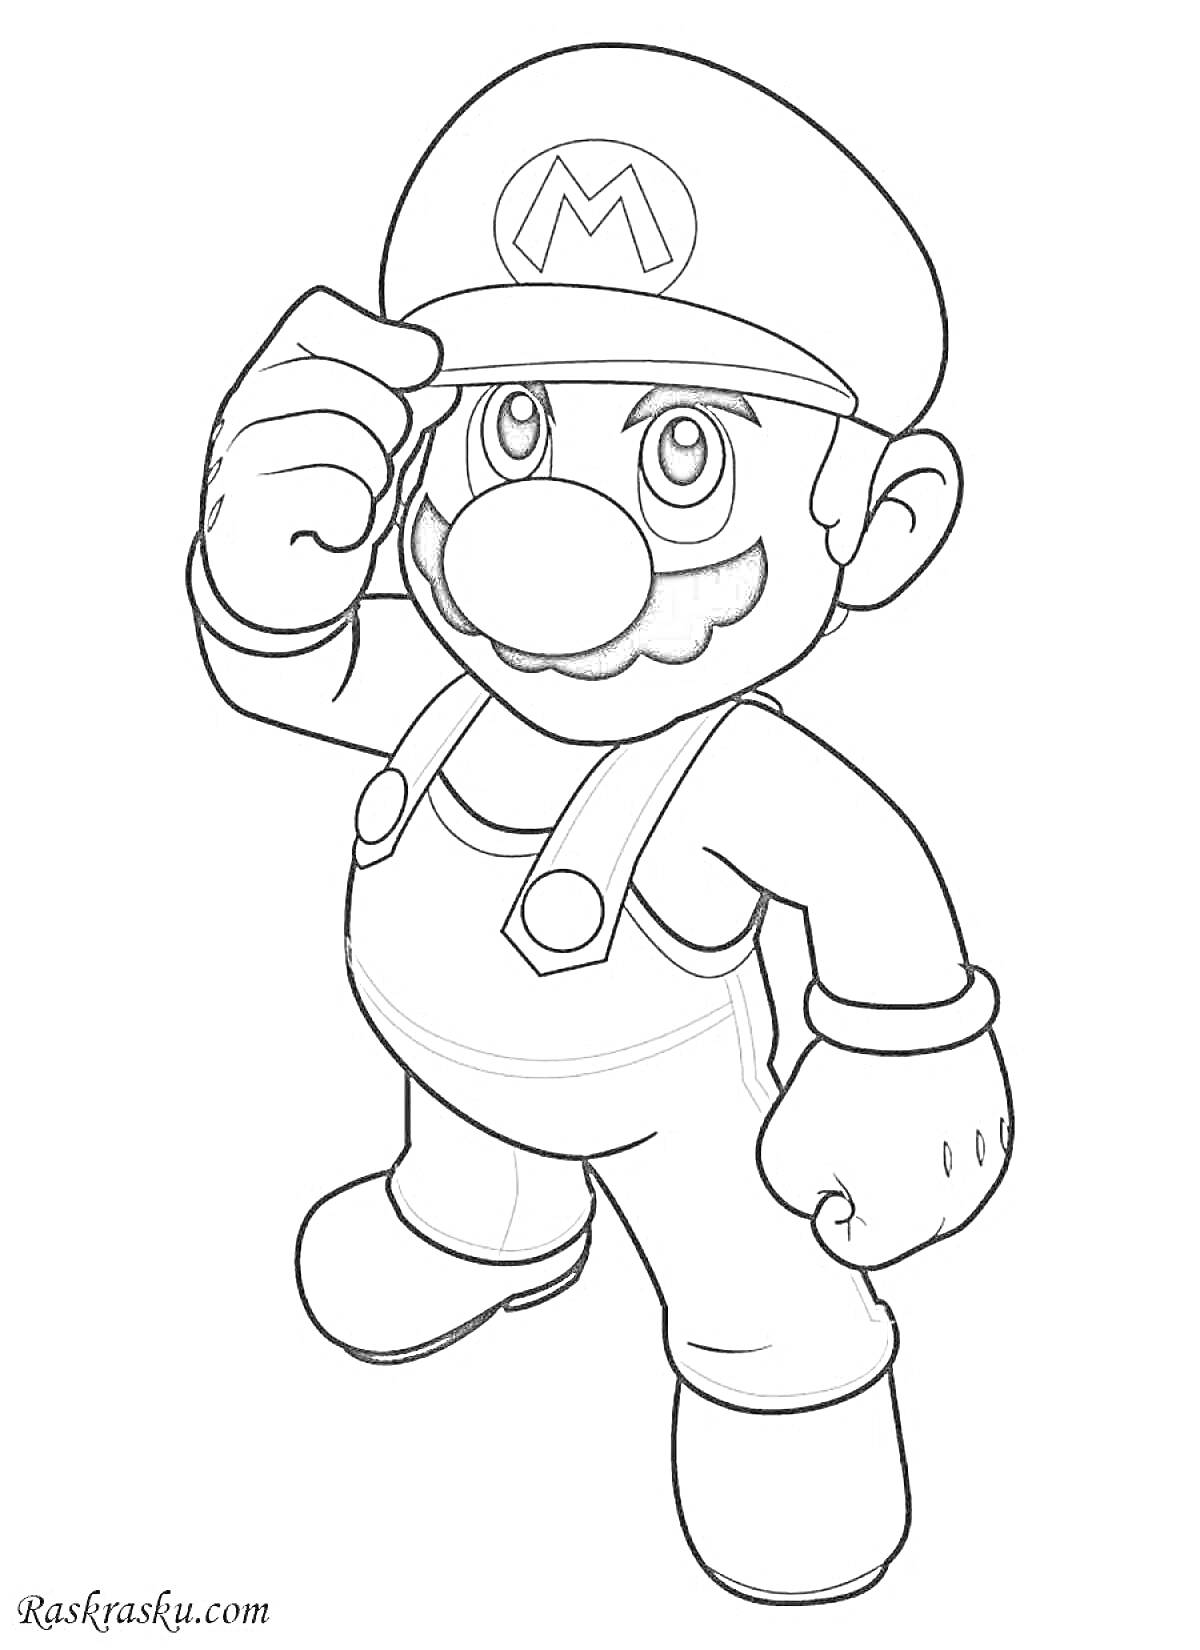 Раскраска Супер Марио в бейсболке поднимает козырек, фигура героя в полный рост, комбинезон и перчатки